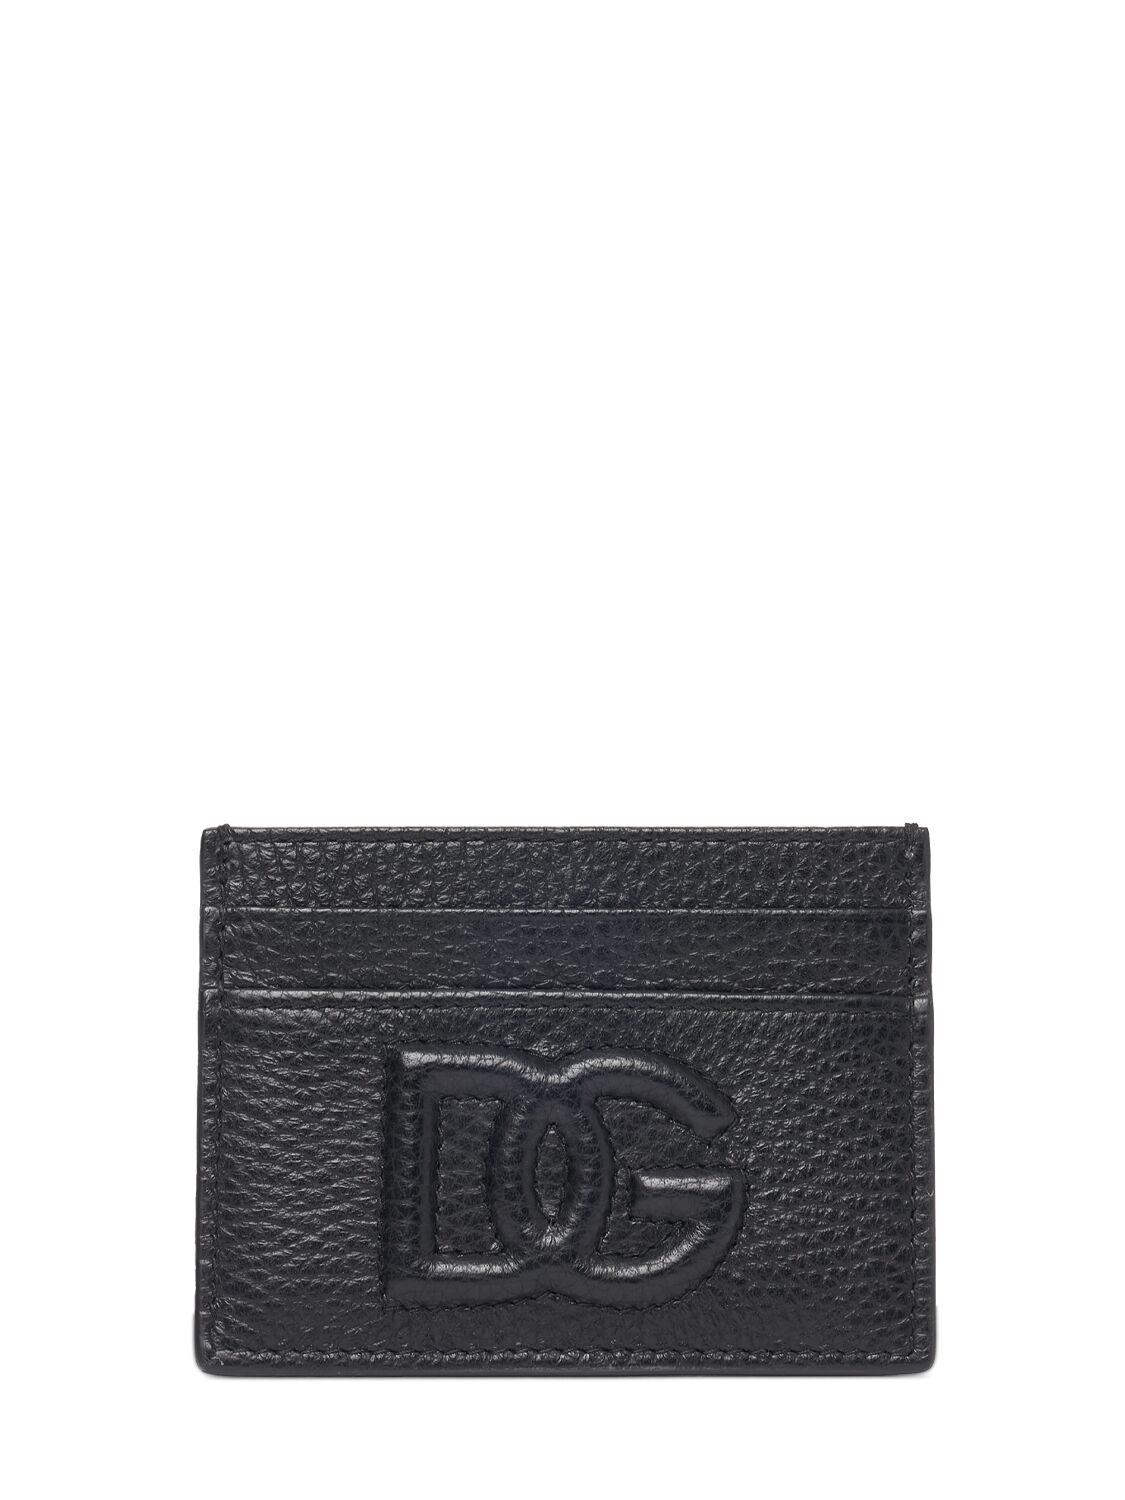 Dolce & Gabbana Dg Embossed Logo Card Holder In Black